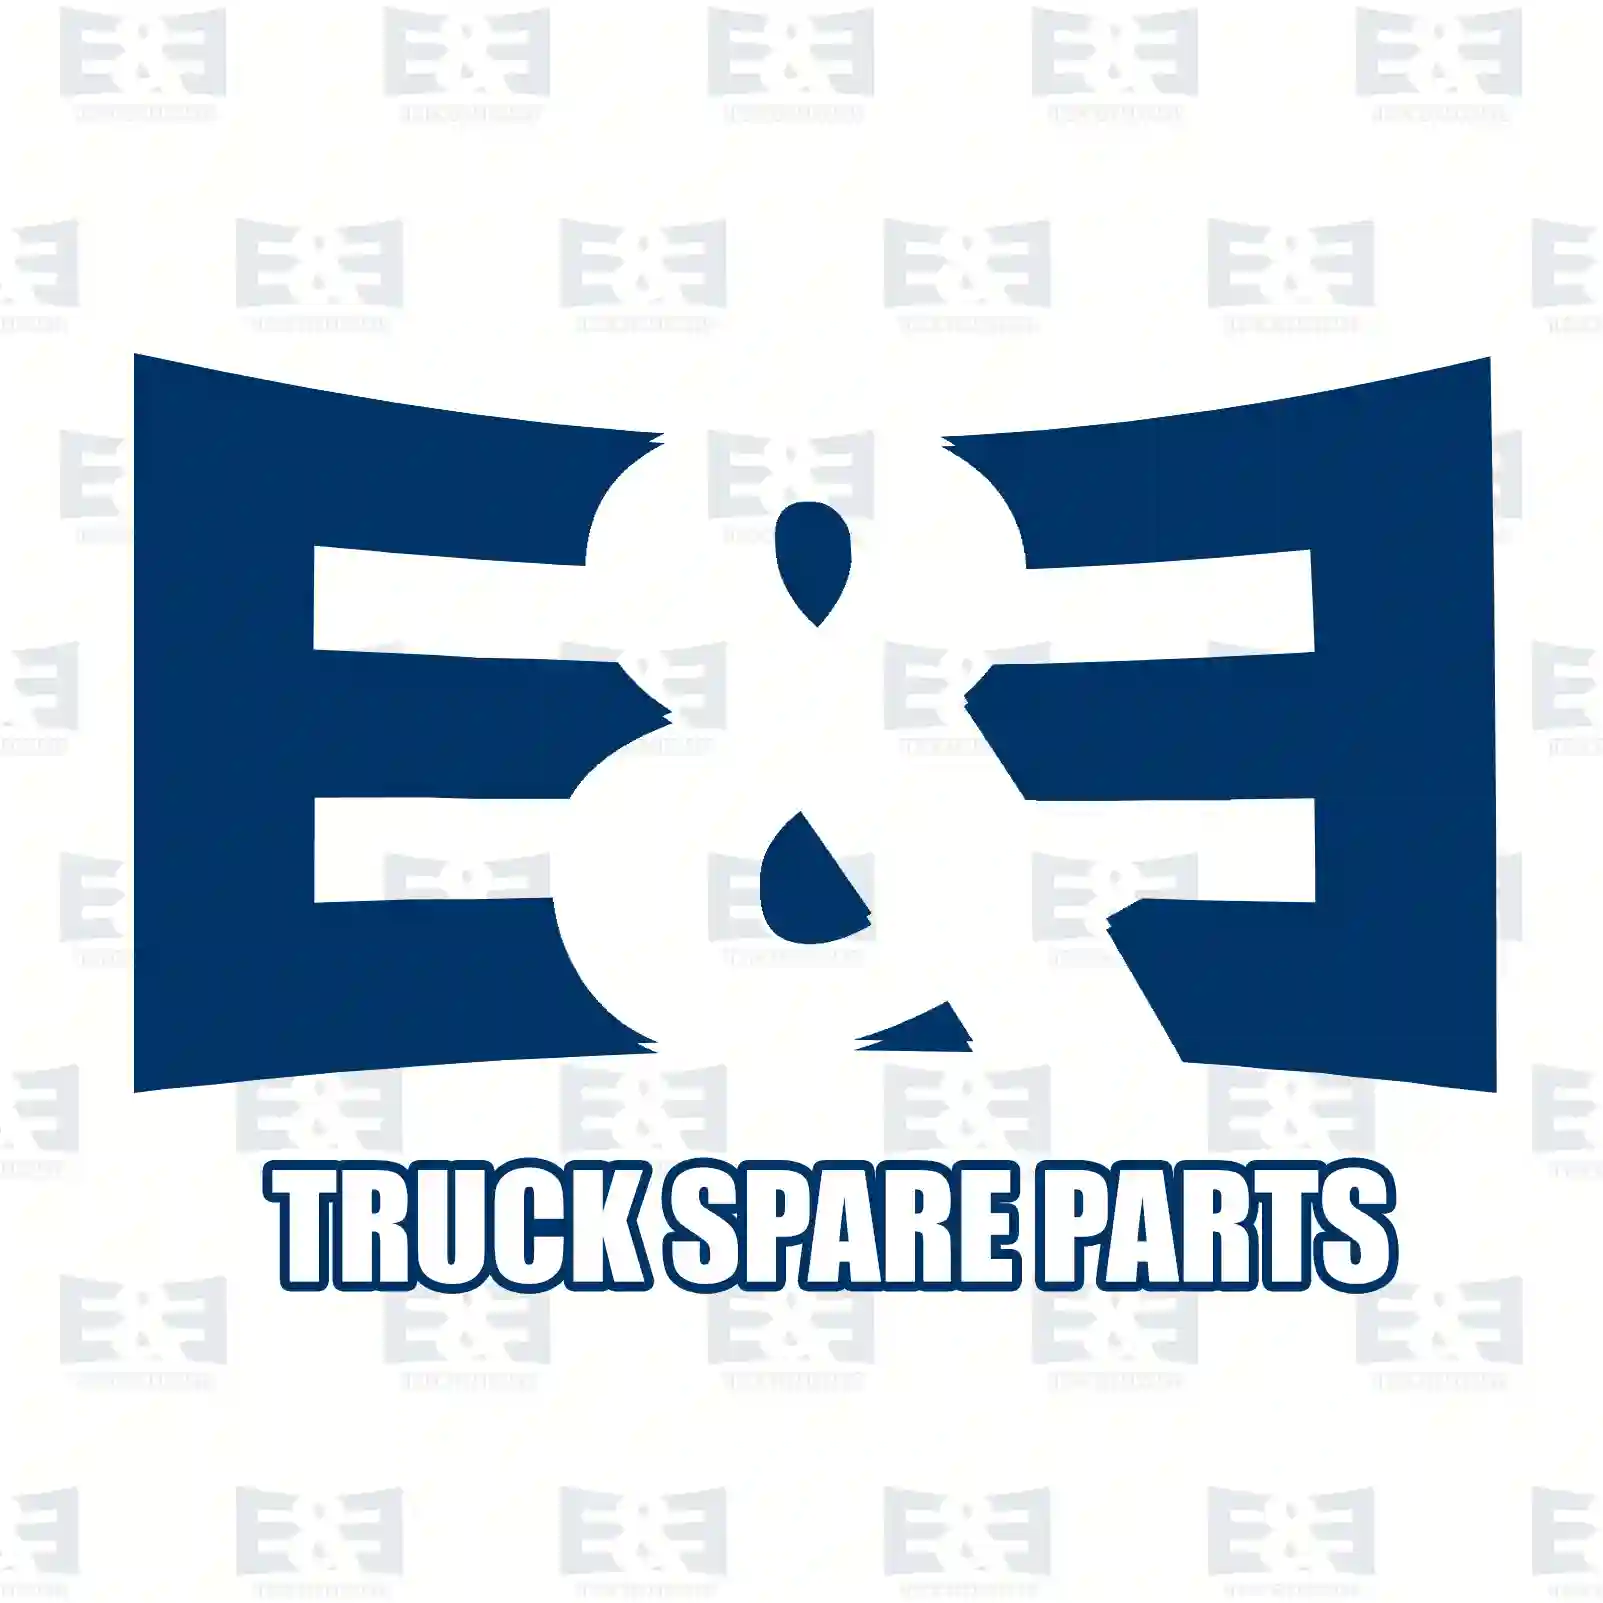 Cover, right, 2E2291896, 9438850174 ||  2E2291896 E&E Truck Spare Parts | Truck Spare Parts, Auotomotive Spare Parts Cover, right, 2E2291896, 9438850174 ||  2E2291896 E&E Truck Spare Parts | Truck Spare Parts, Auotomotive Spare Parts